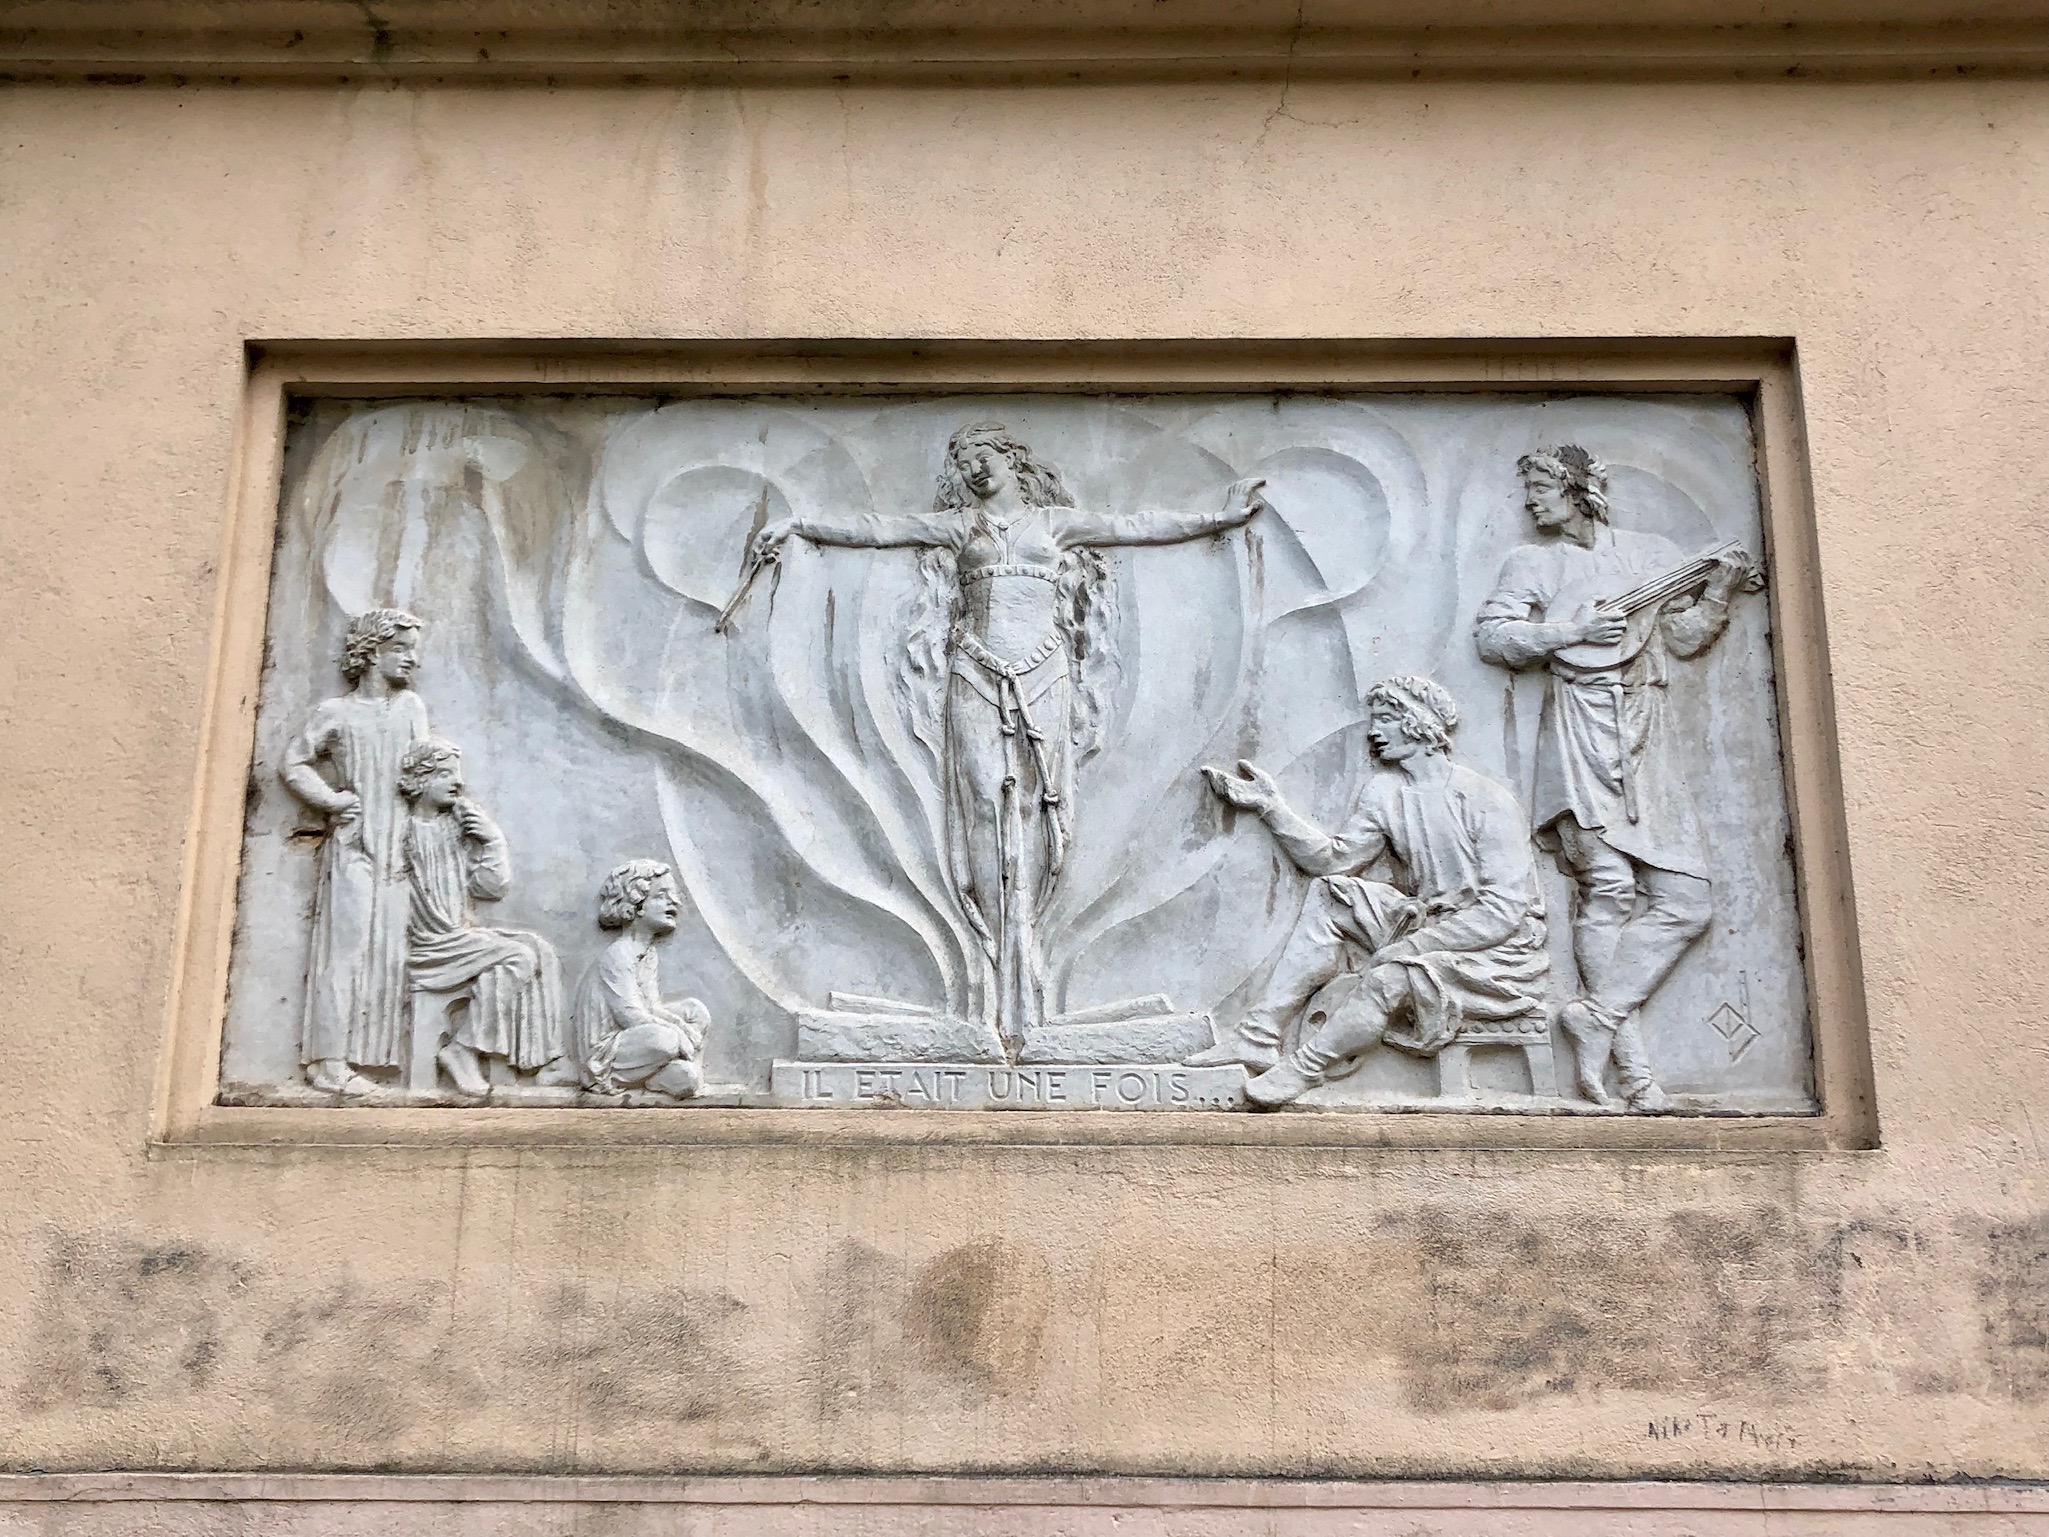 Ecole Ernest Renan, salle des fêtes, 1933, arch. J. Montariol, bas reliefs de Jean Druilhe